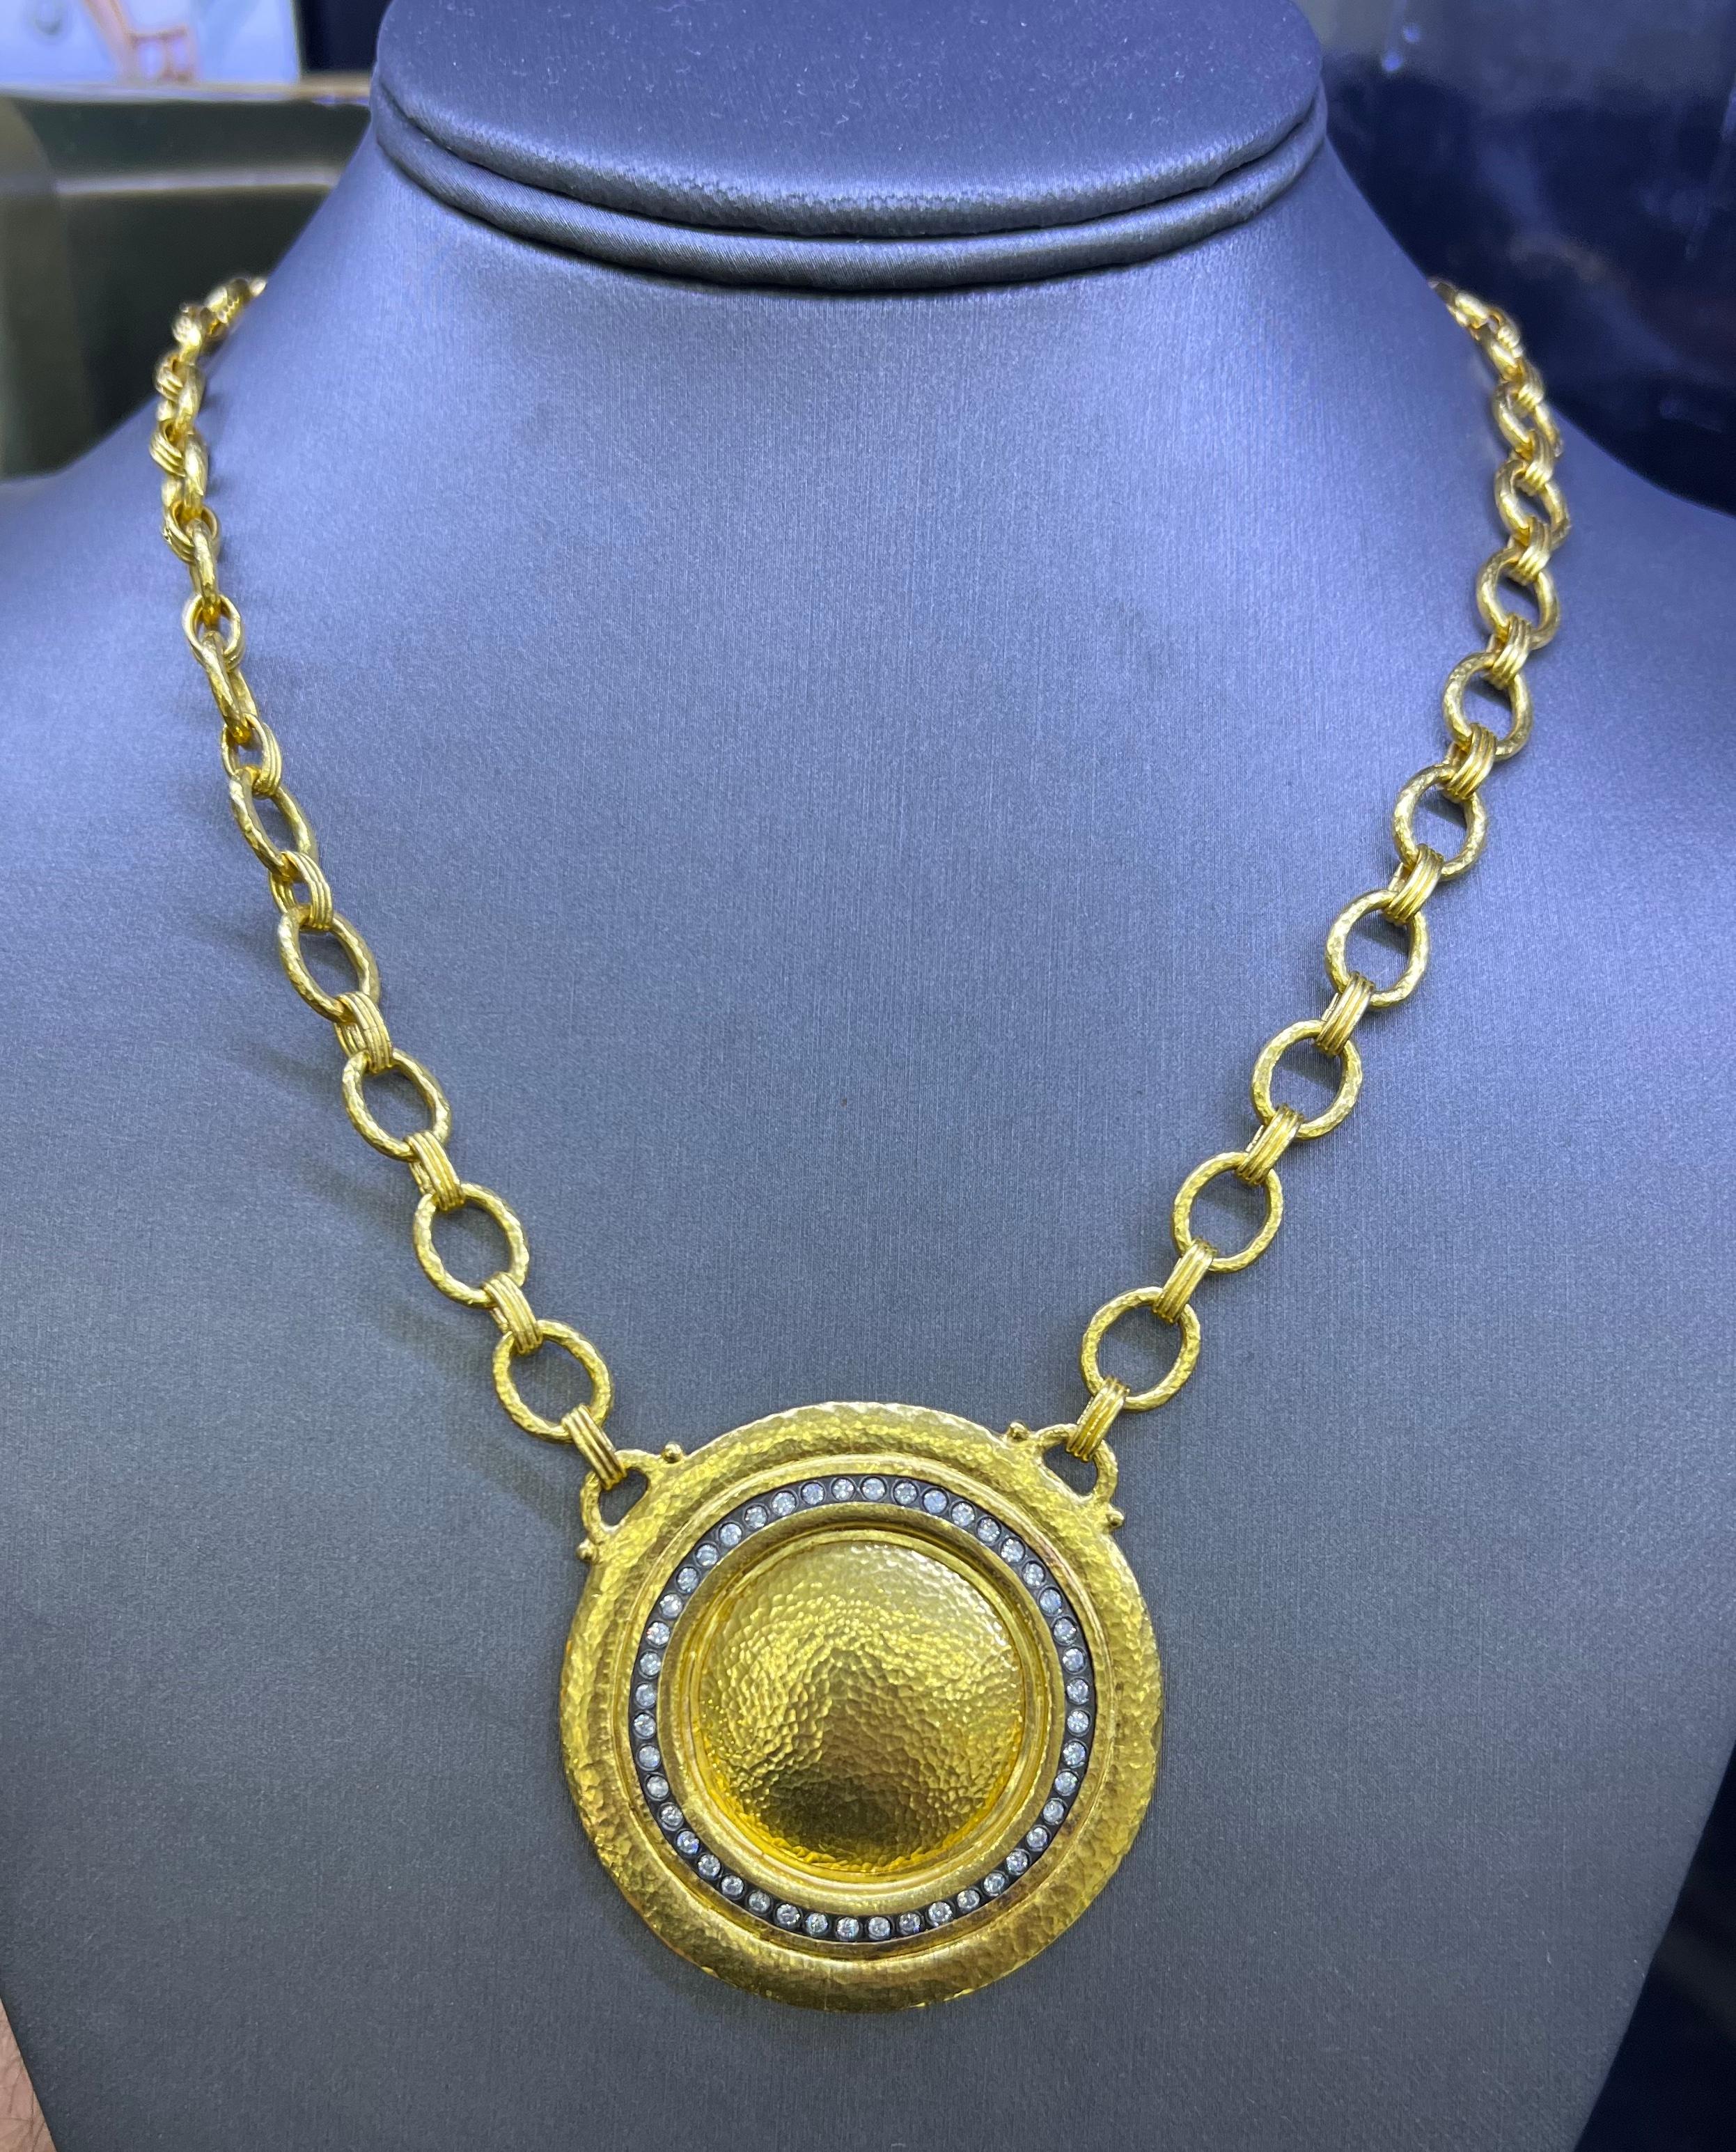 gold medallion necklace 24k